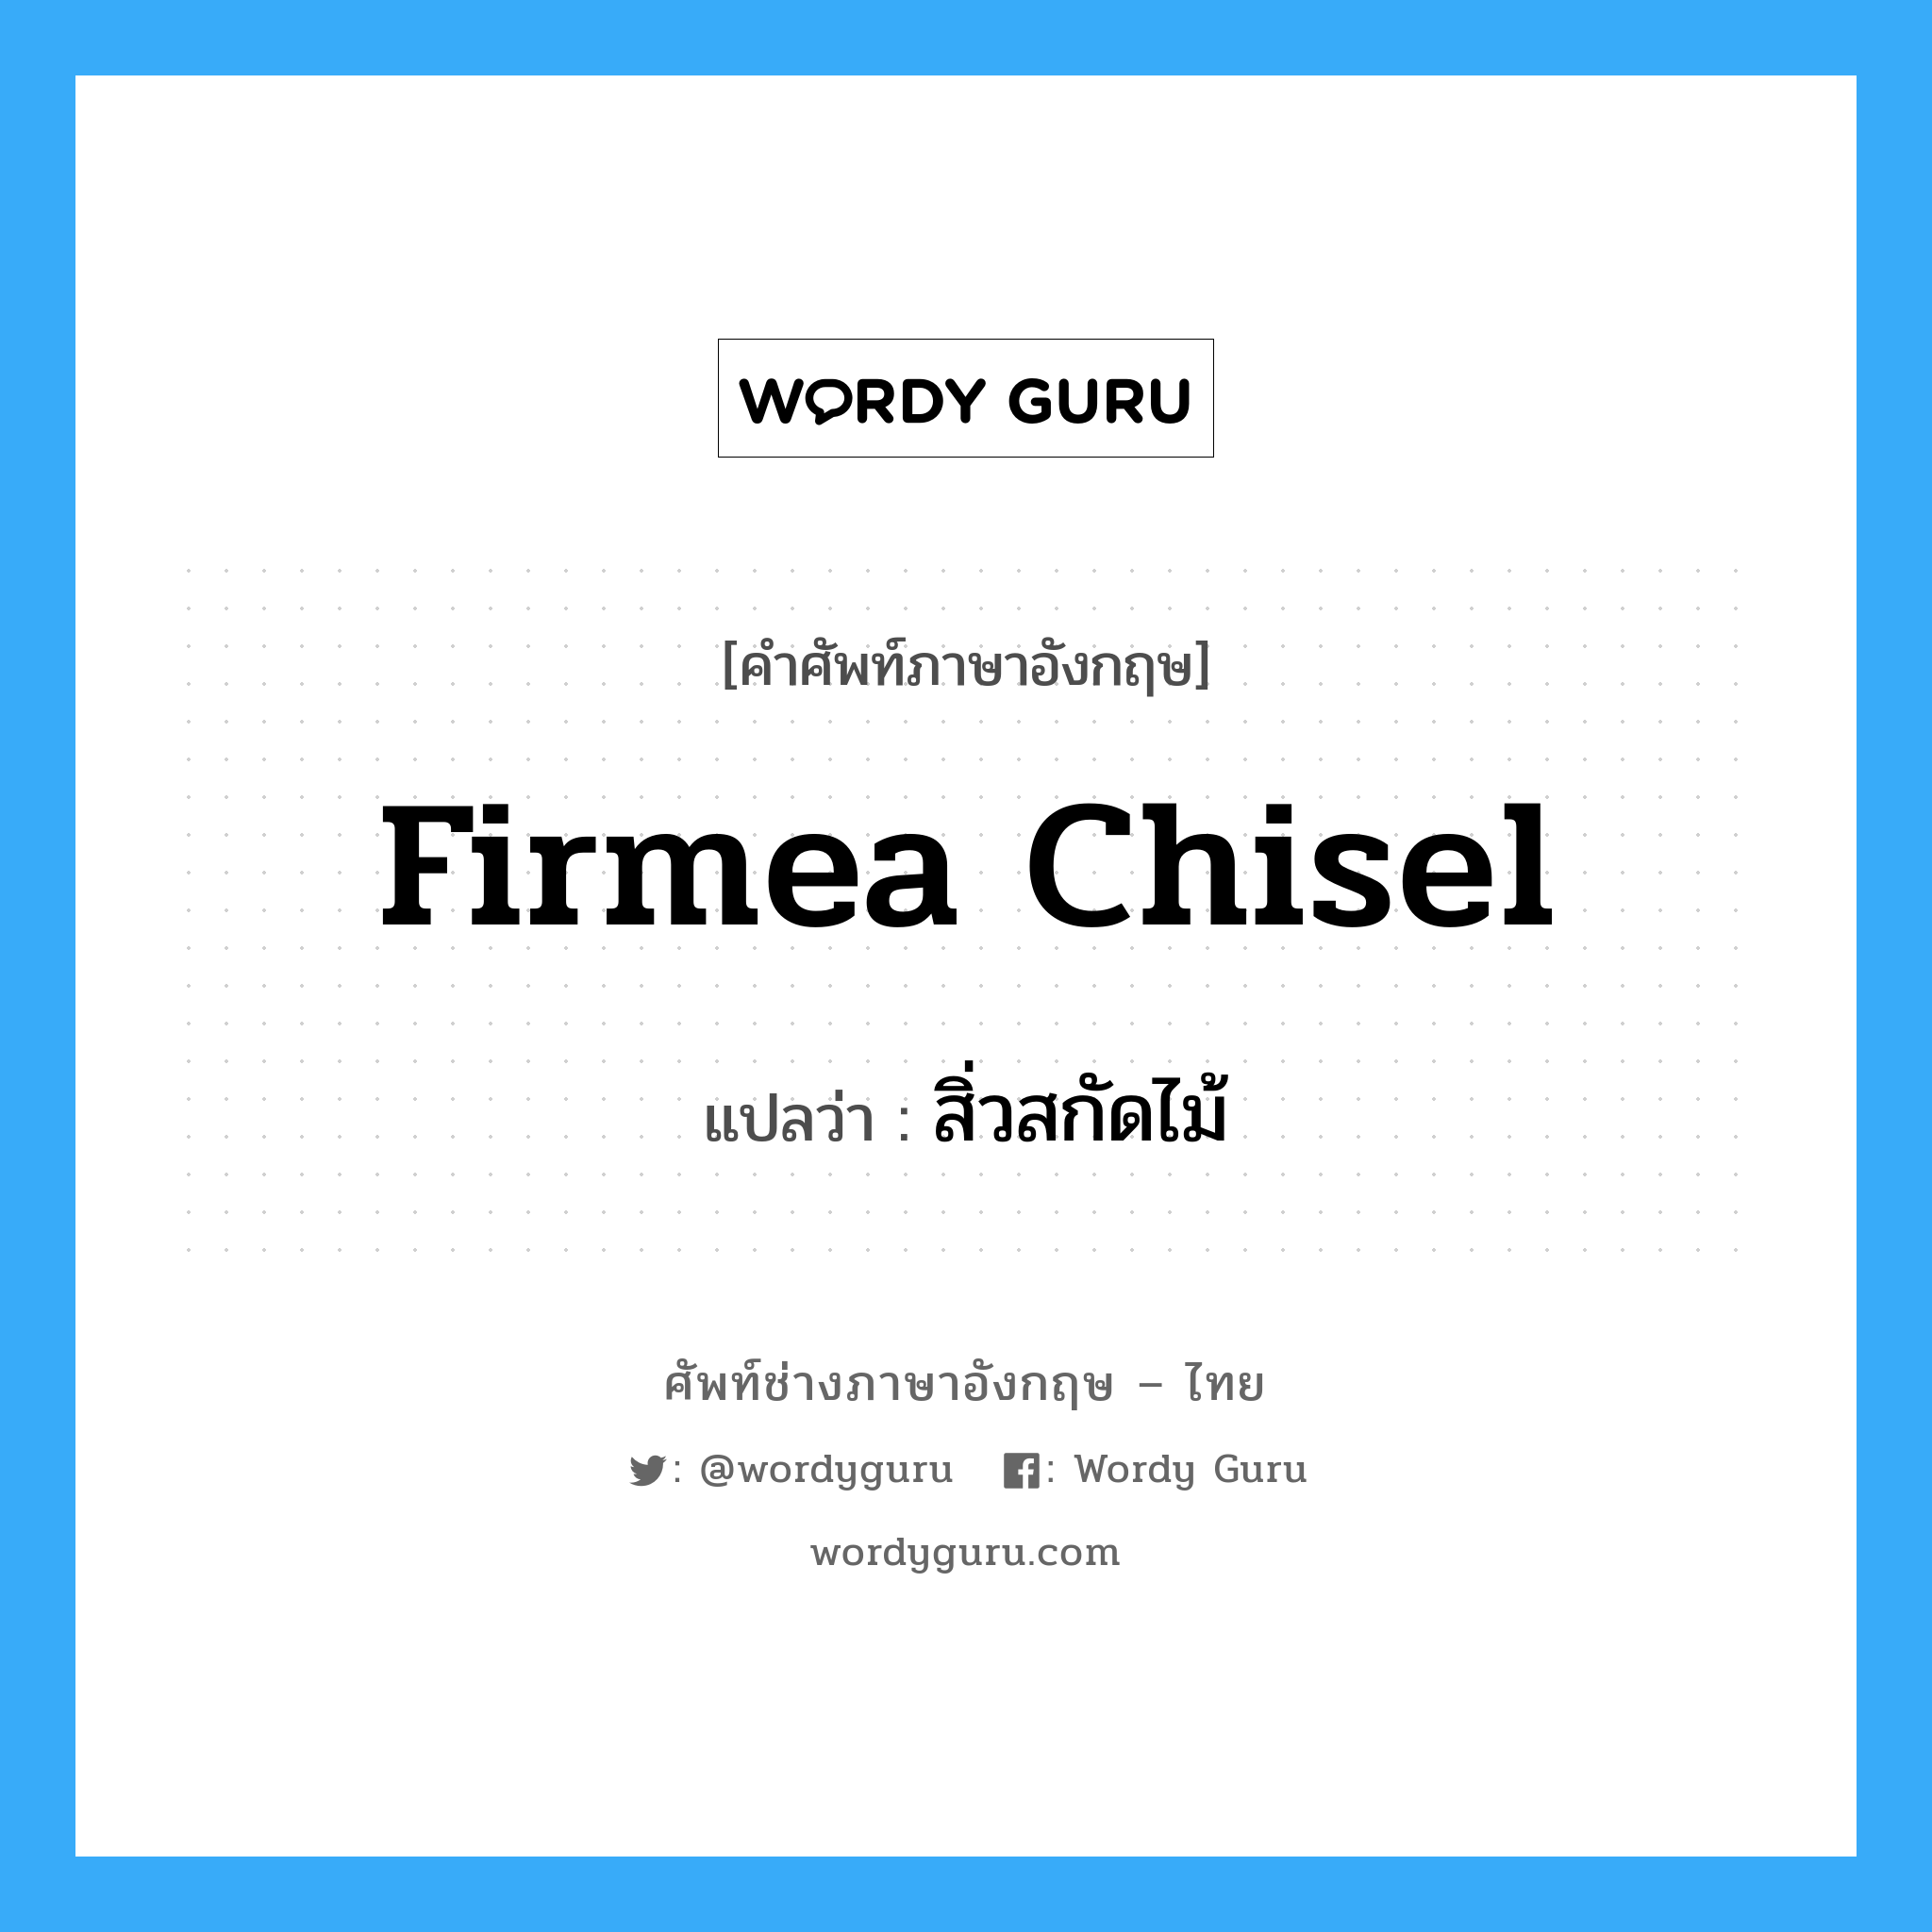 firmea chisel แปลว่า?, คำศัพท์ช่างภาษาอังกฤษ - ไทย firmea chisel คำศัพท์ภาษาอังกฤษ firmea chisel แปลว่า สิ่วสกัดไม้